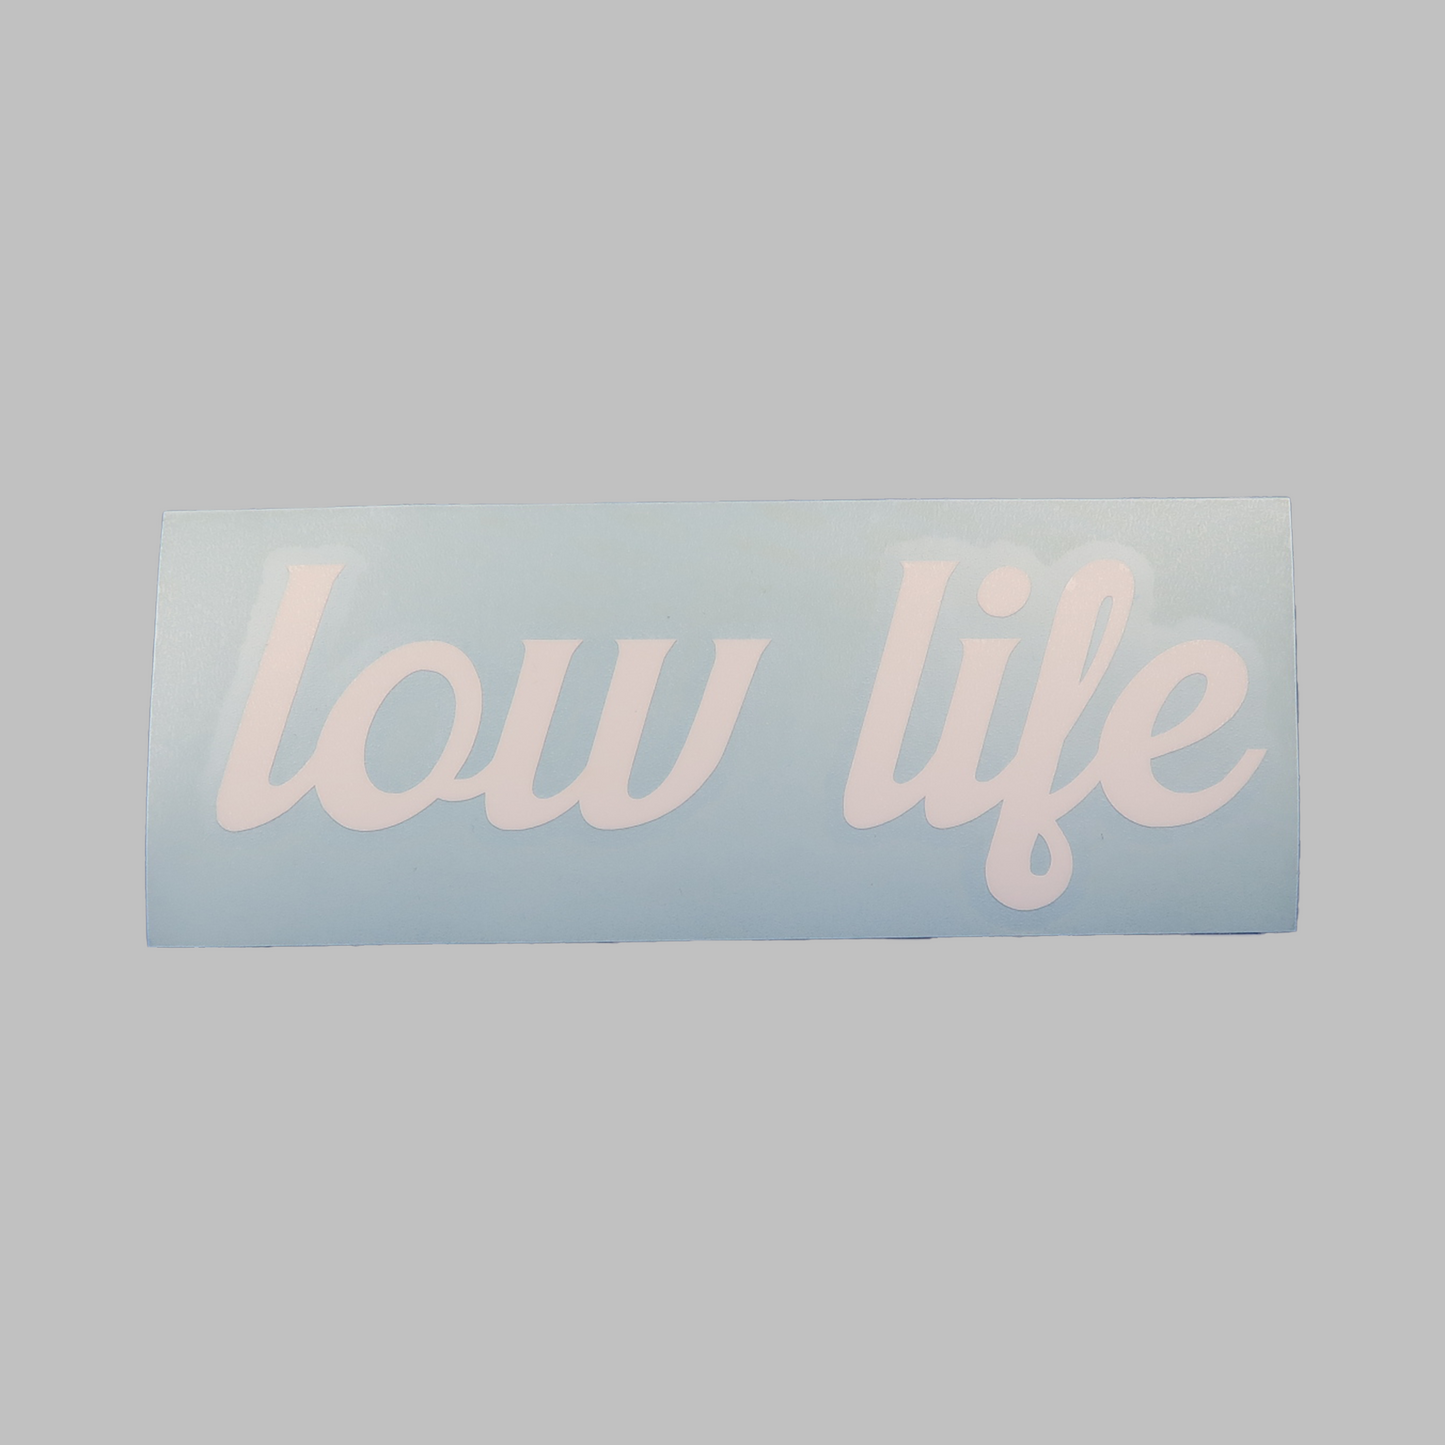 Low life - vinyldekal